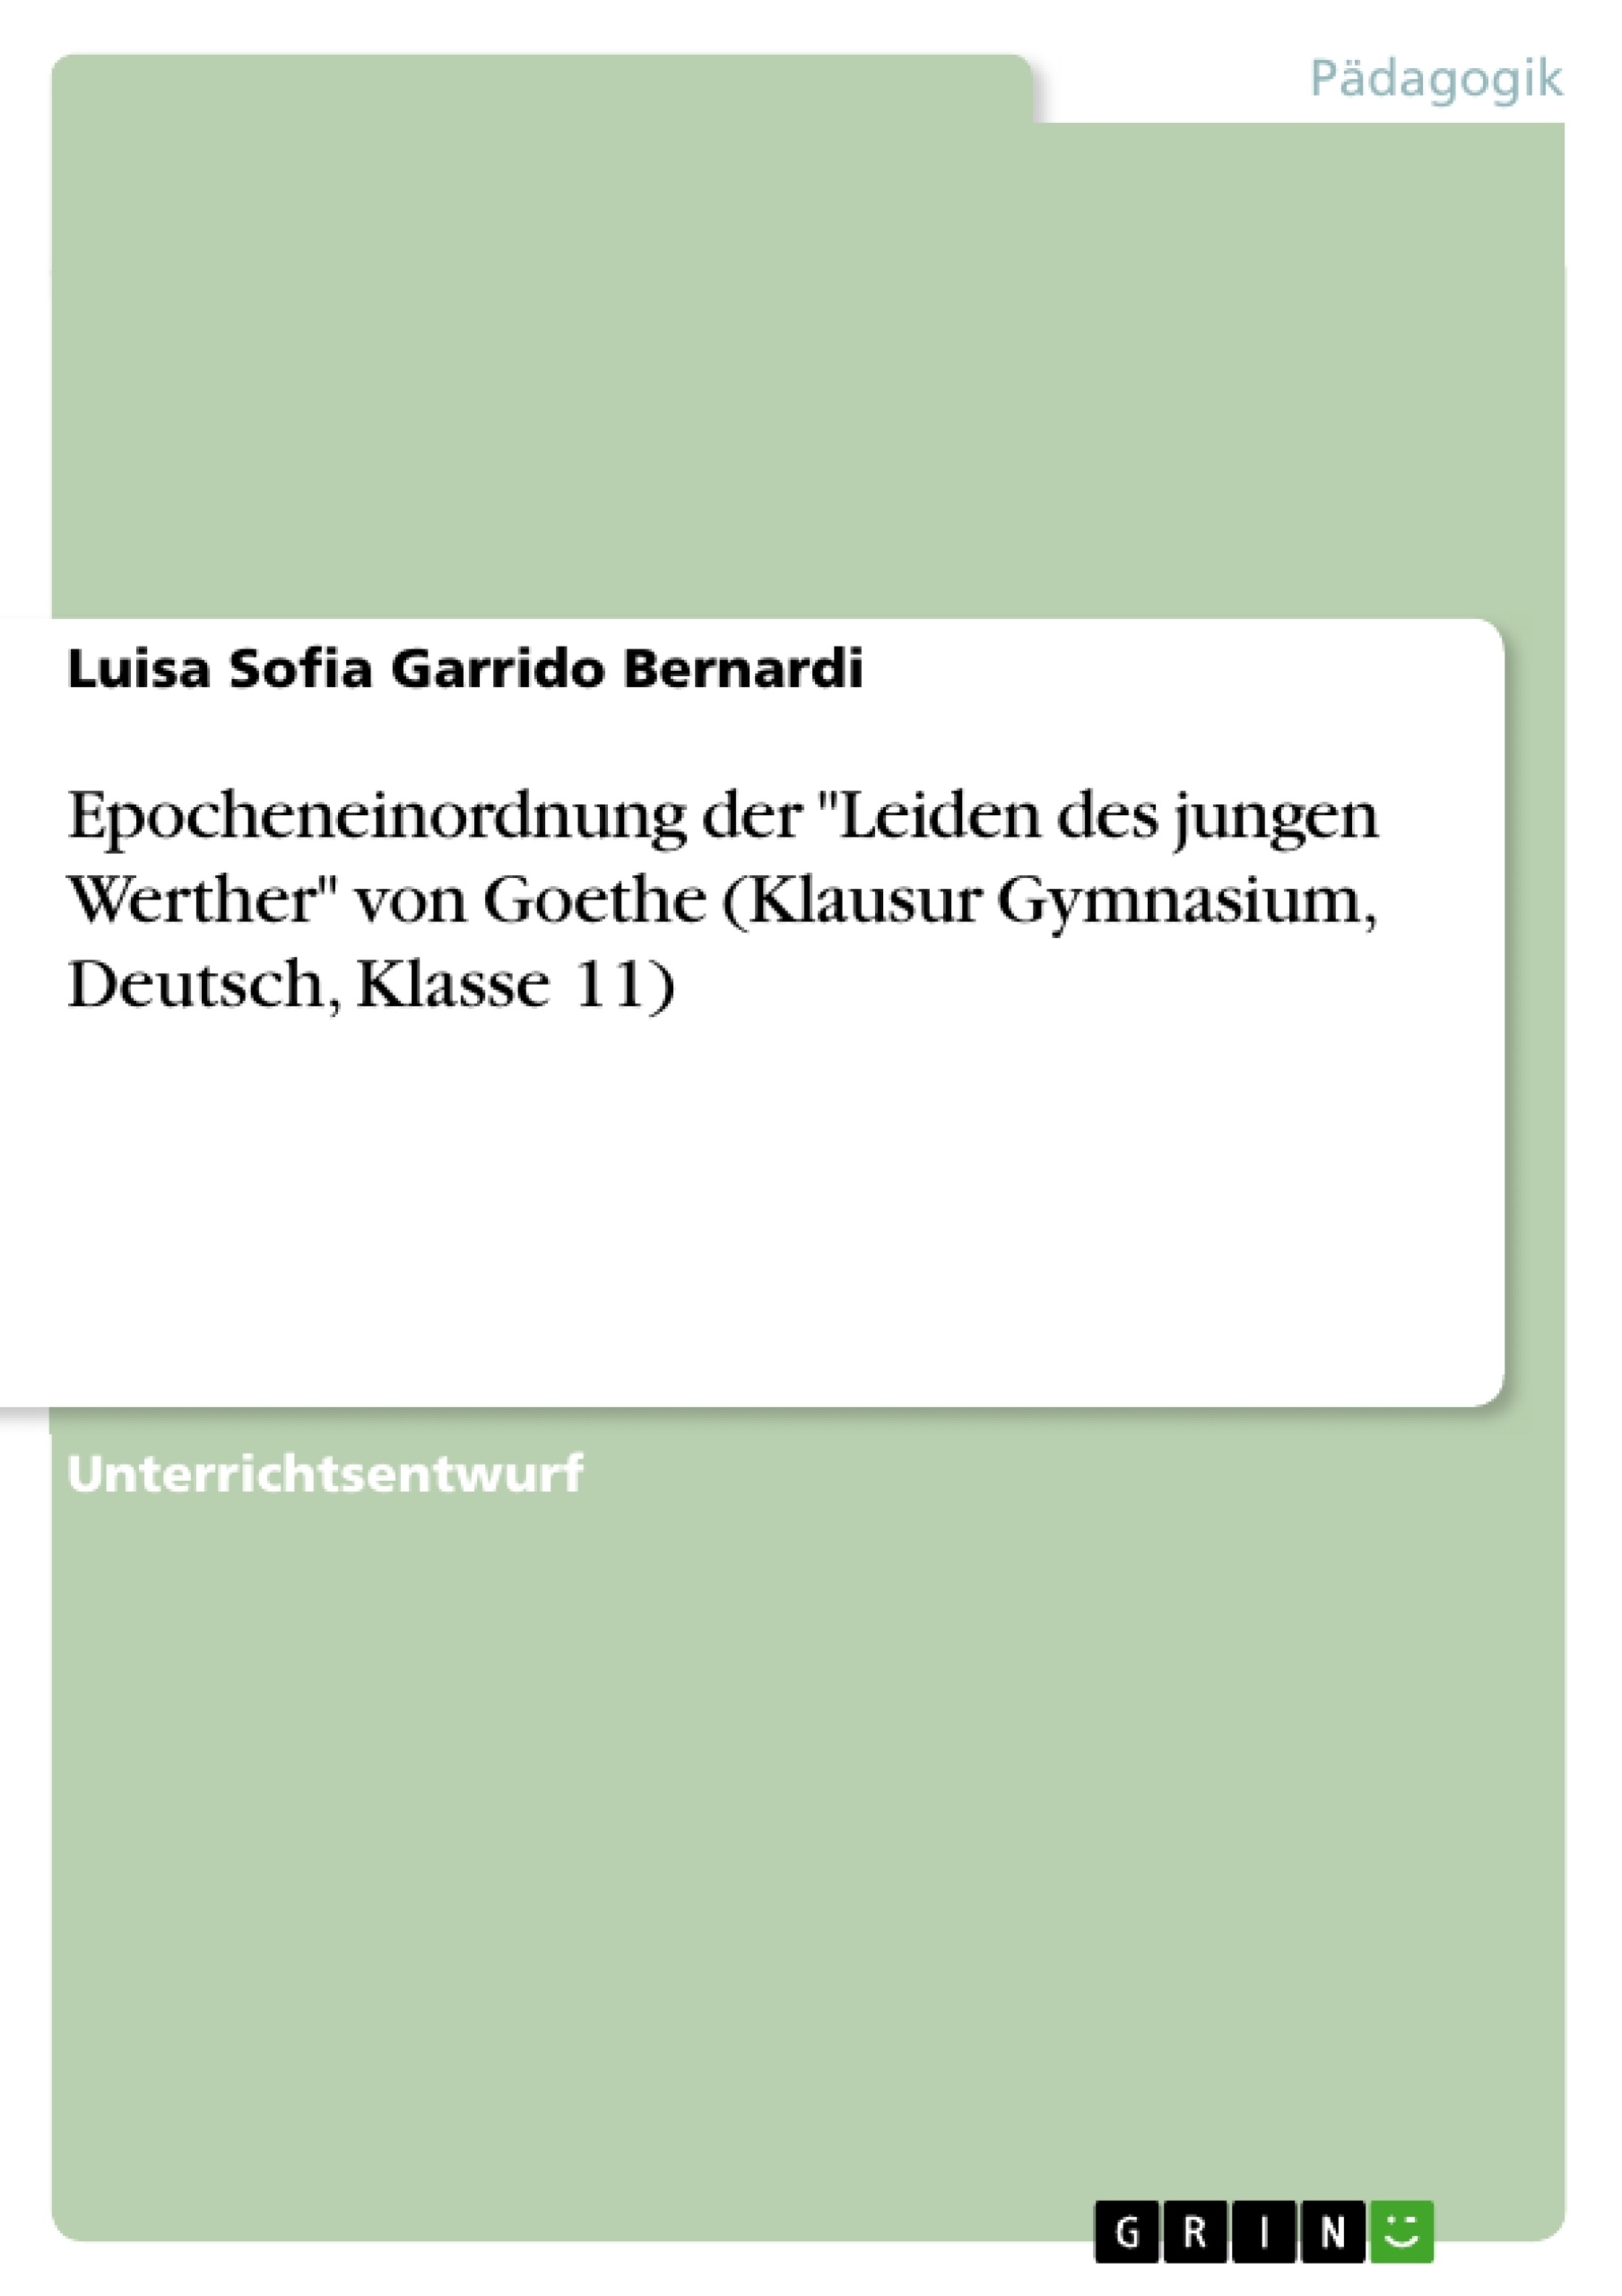 Título: Epocheneinordnung der "Leiden des jungen Werther" von Goethe (Klausur Gymnasium, Deutsch, Klasse 11)